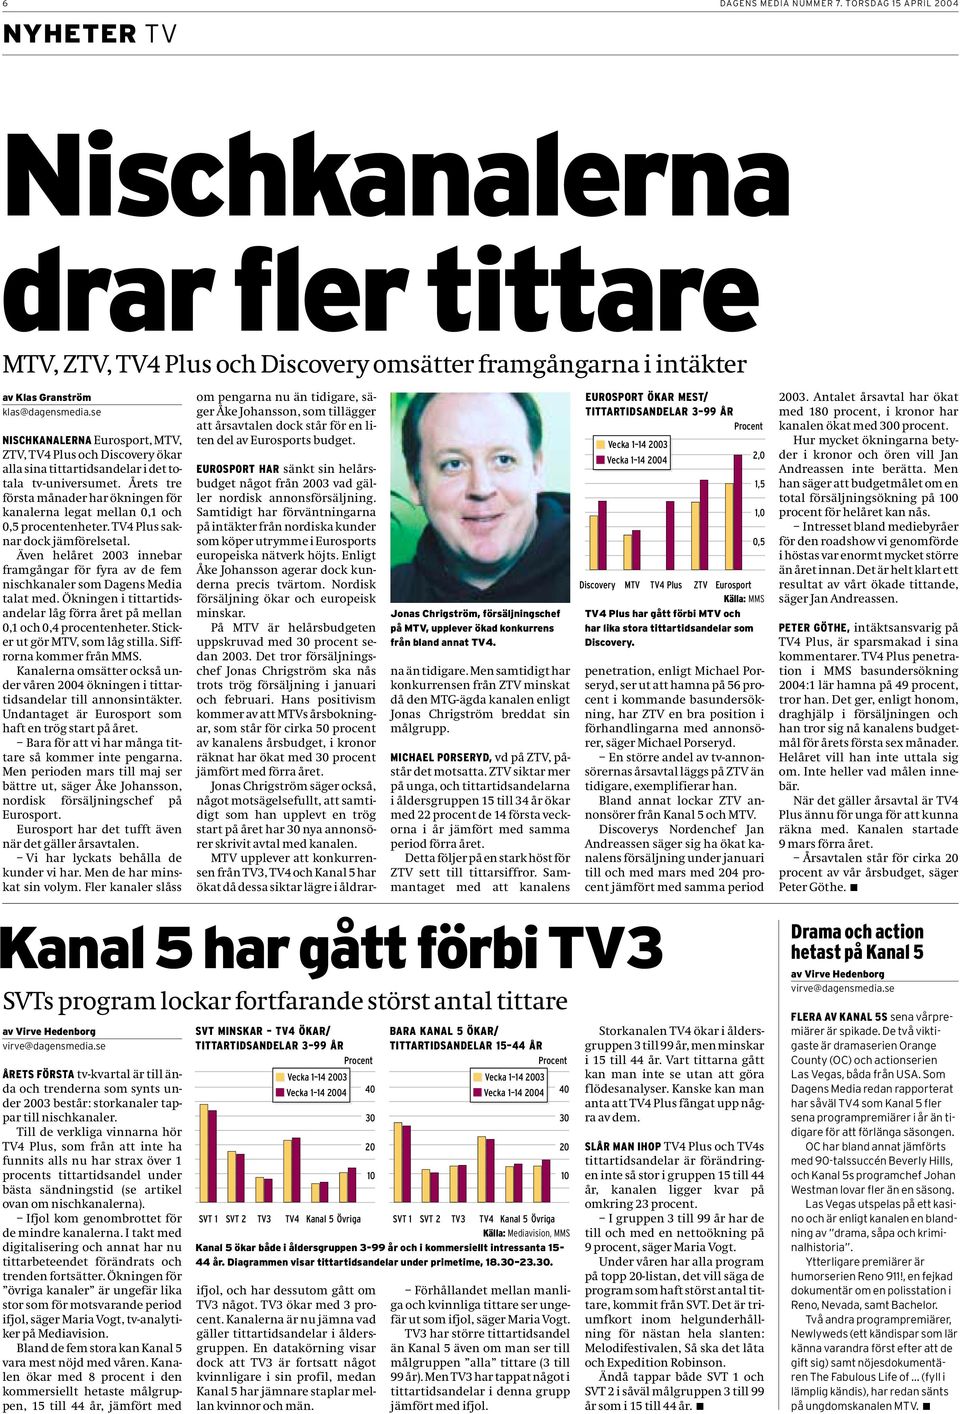 Årets tre första månader har ökningen för kanalerna legat mellan 0,1 och 0,5 procentenheter. TV4 Plus saknar dock jämförelsetal.